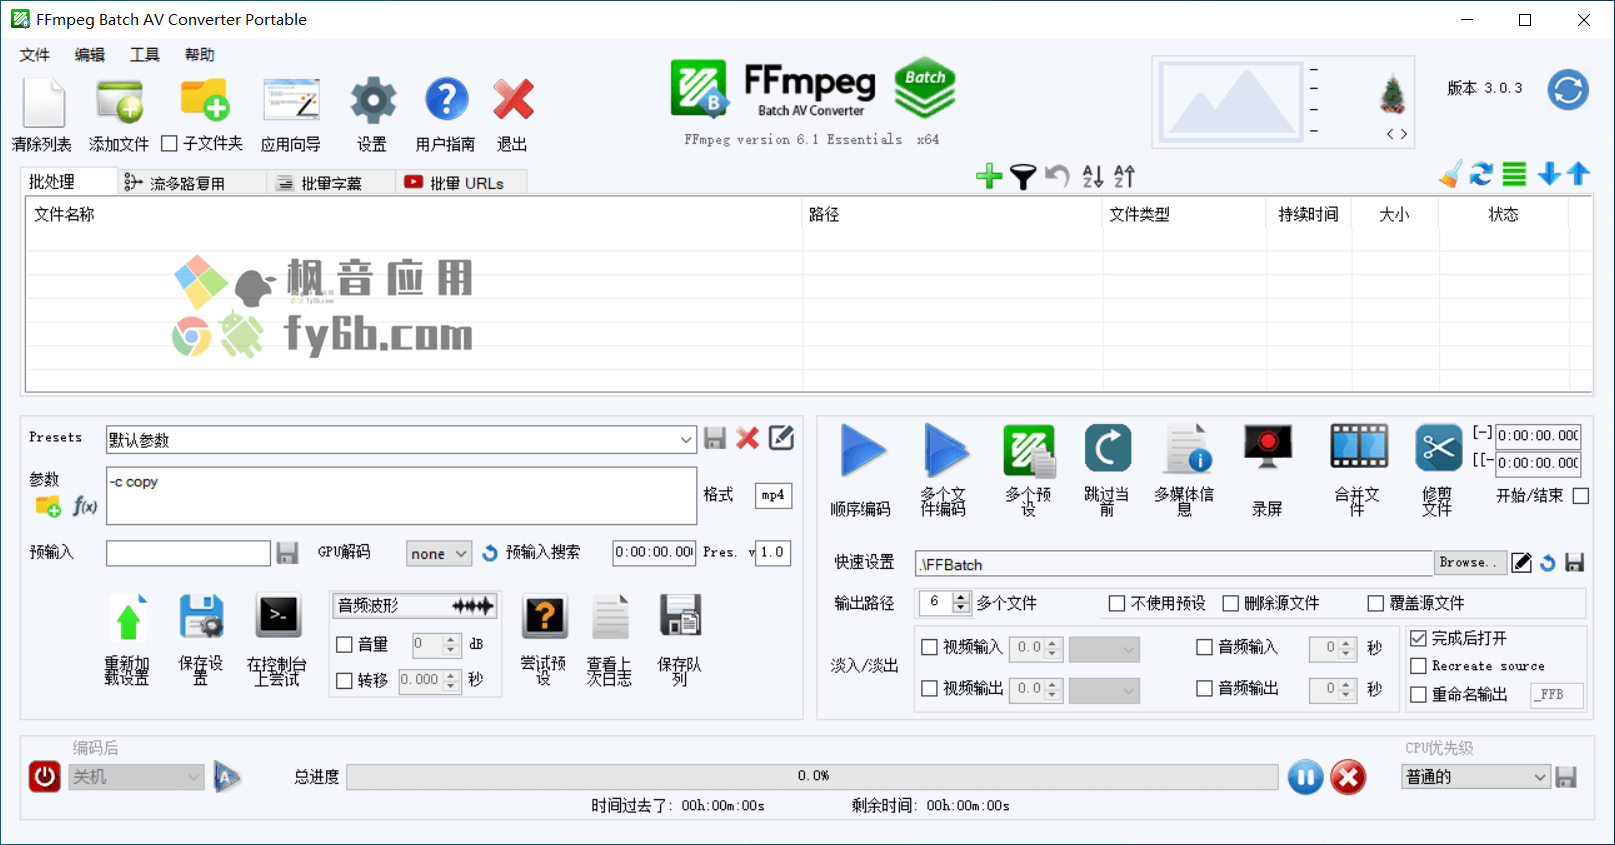 Windows FFmpeg Batch AV Converter 视频批量转换工具_v3.0.3 中文便携版